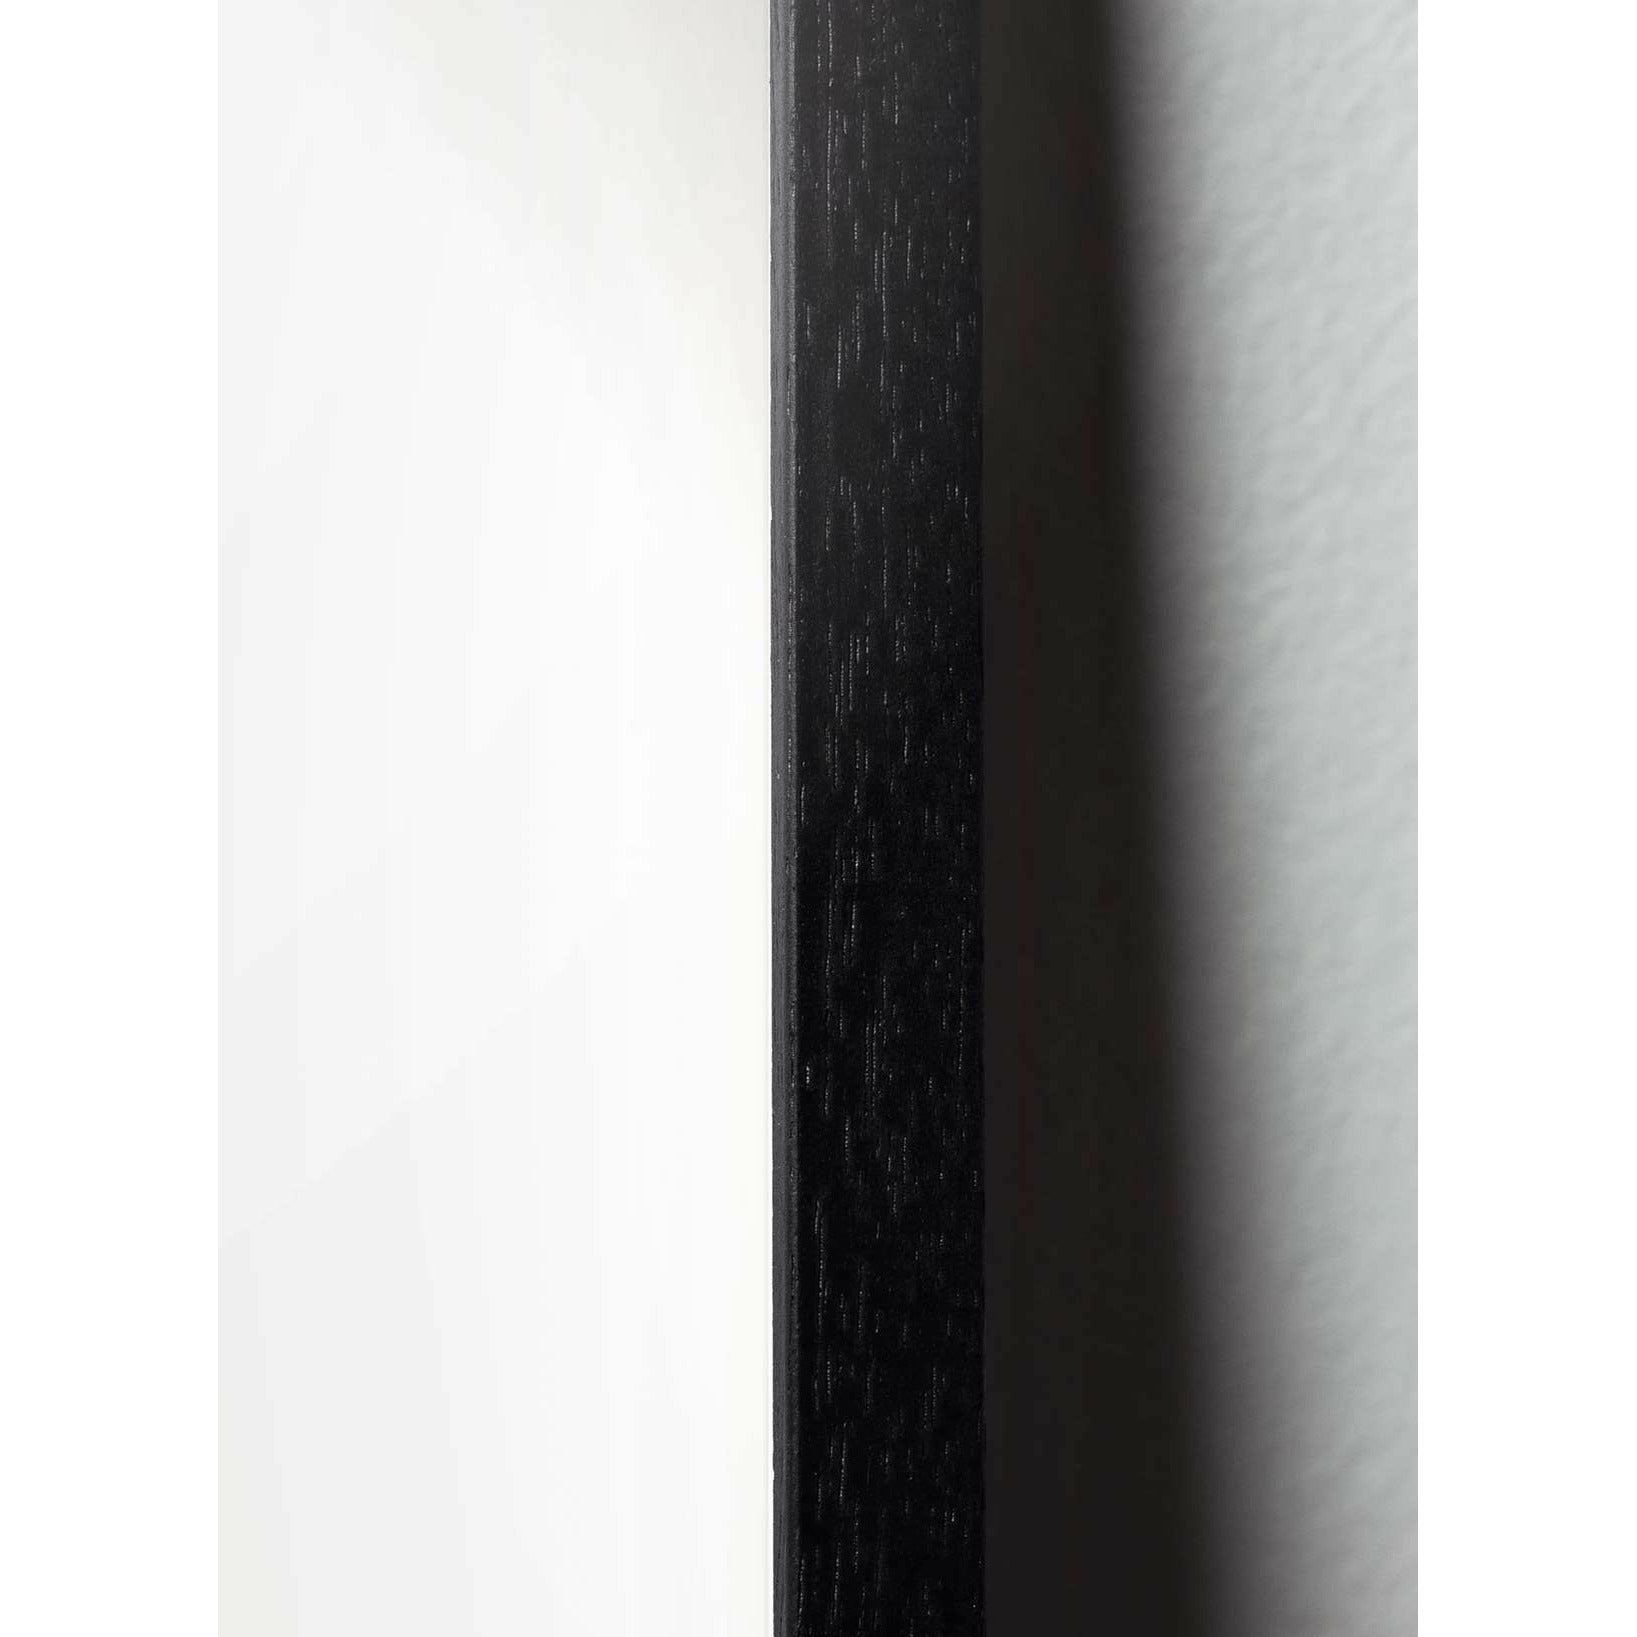 Klasický plakát mozkového medvěda, rám v černém lakovaném dřevěném dřevěné, pískové barevné pozadí